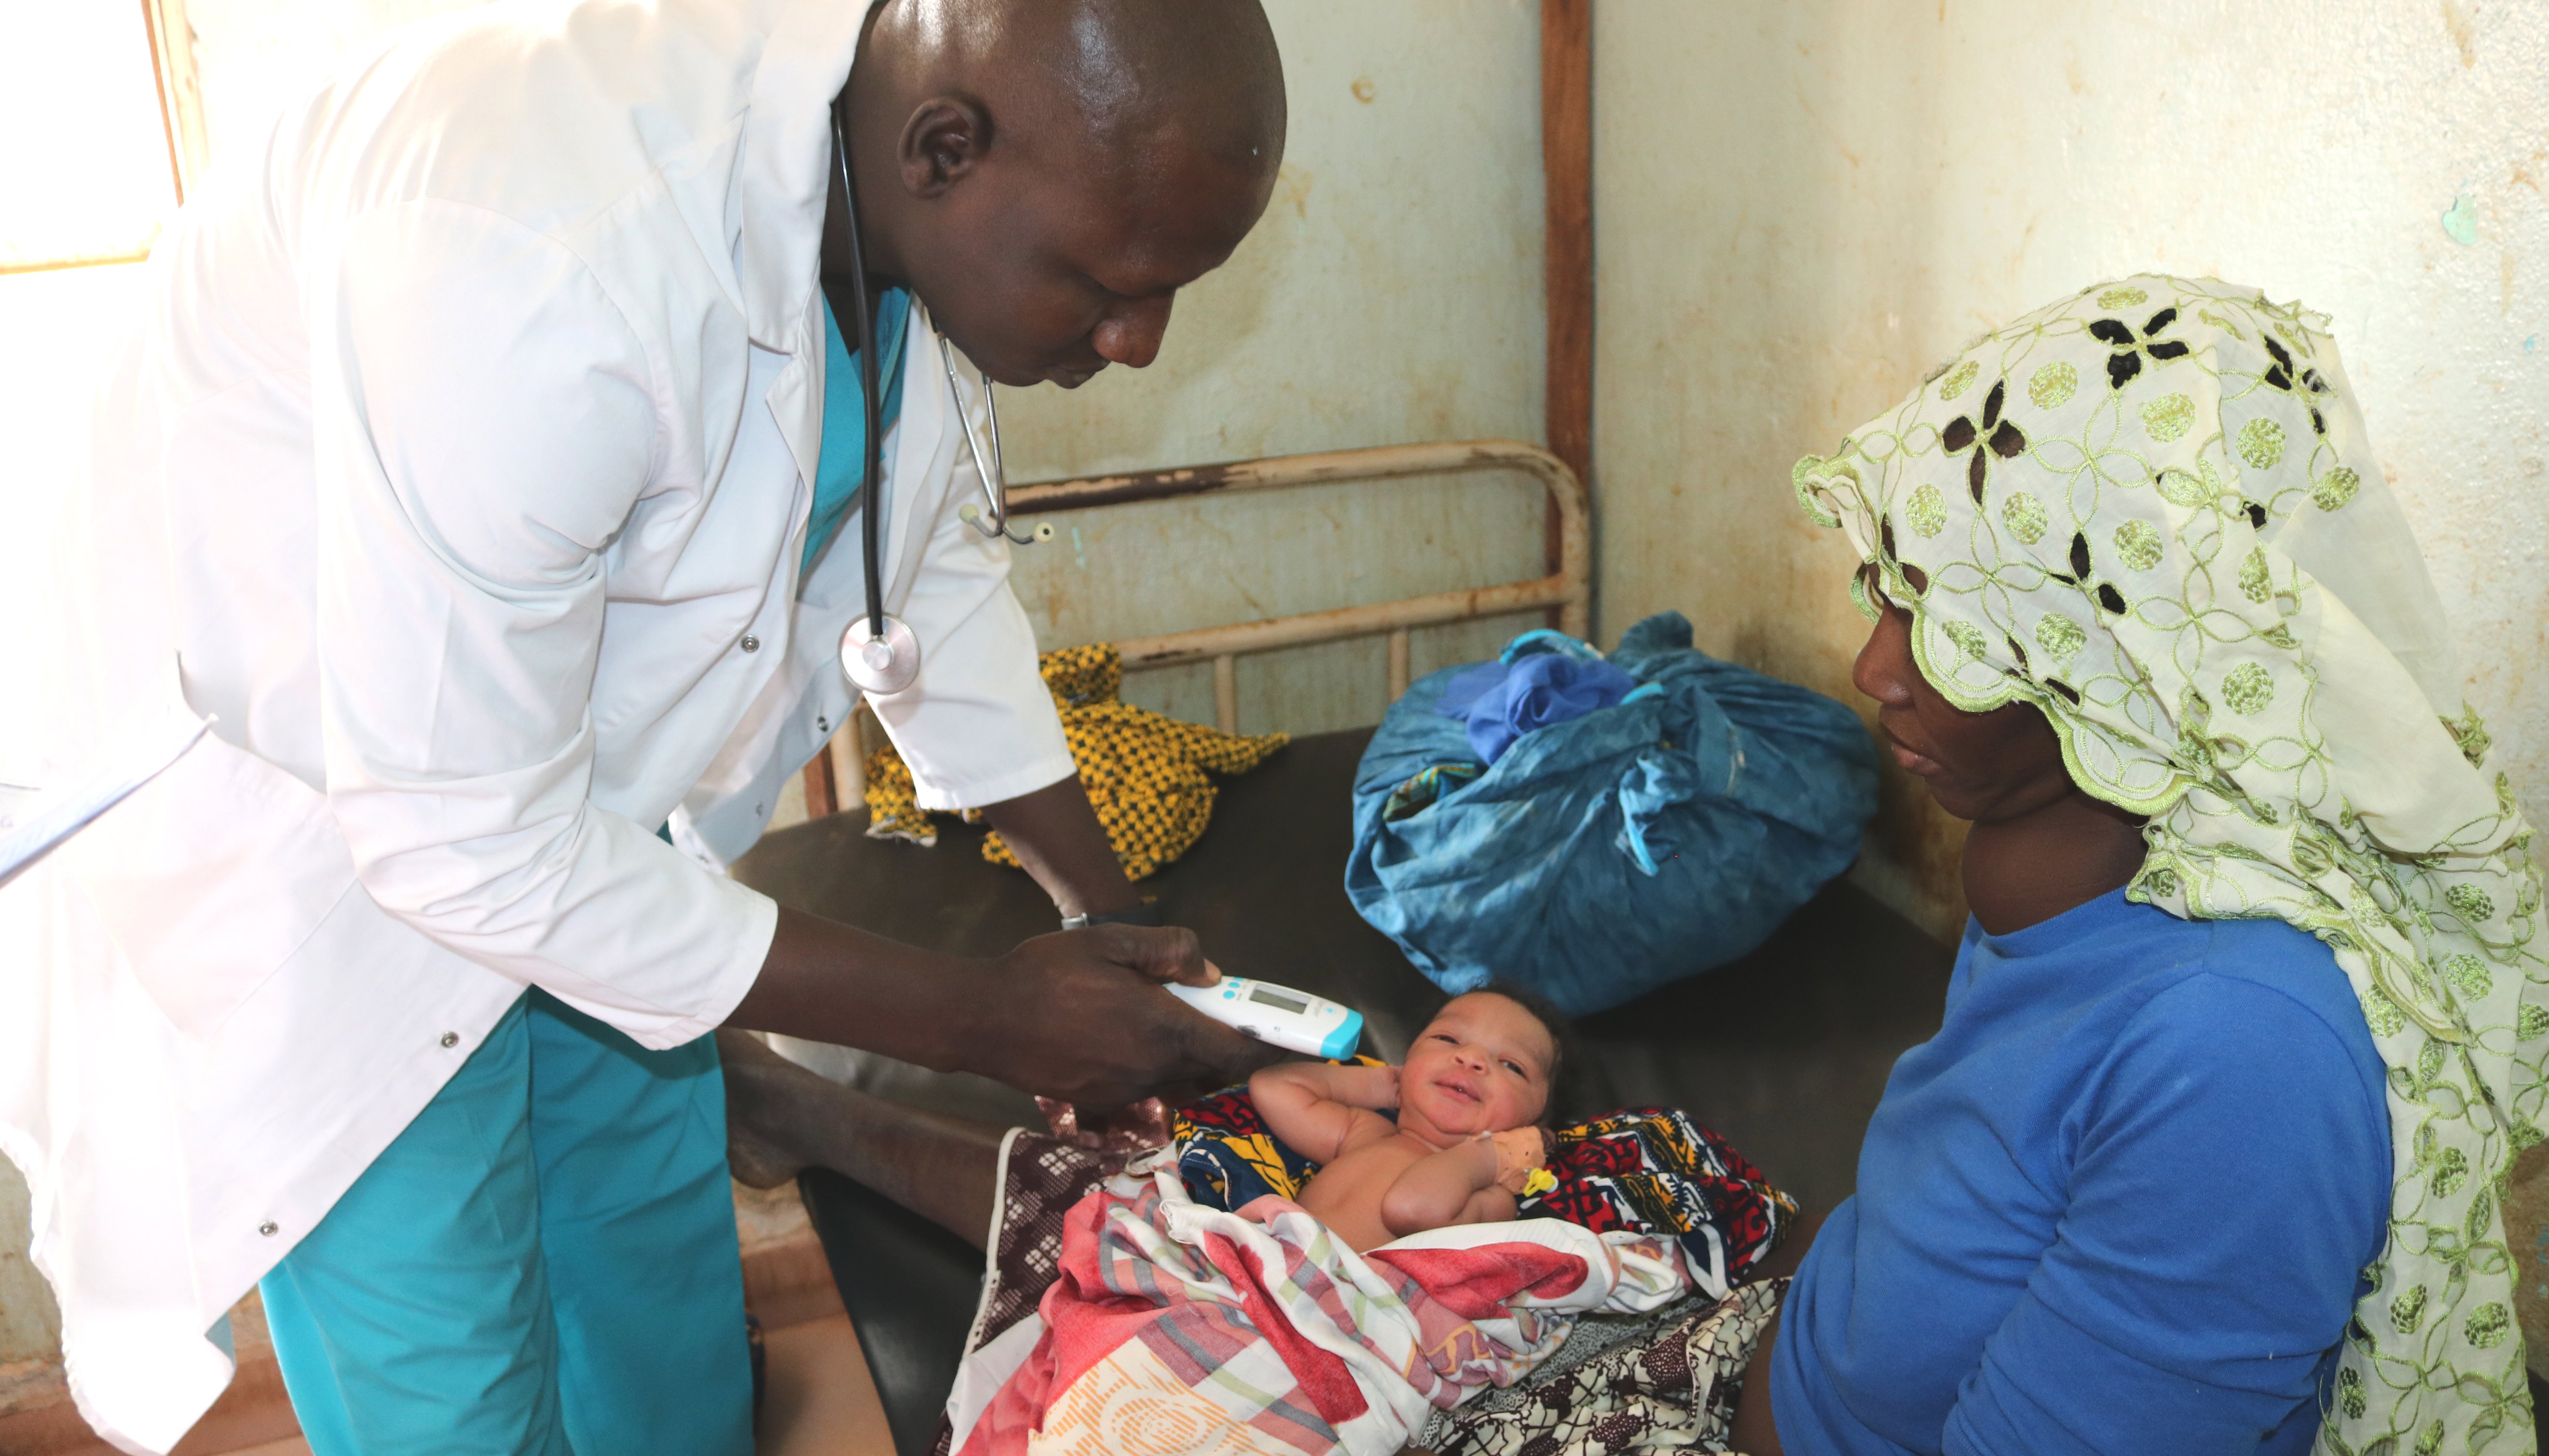 Read Un appel au service: assurer des soins maternels de qualite au Mali by HRH2030 program